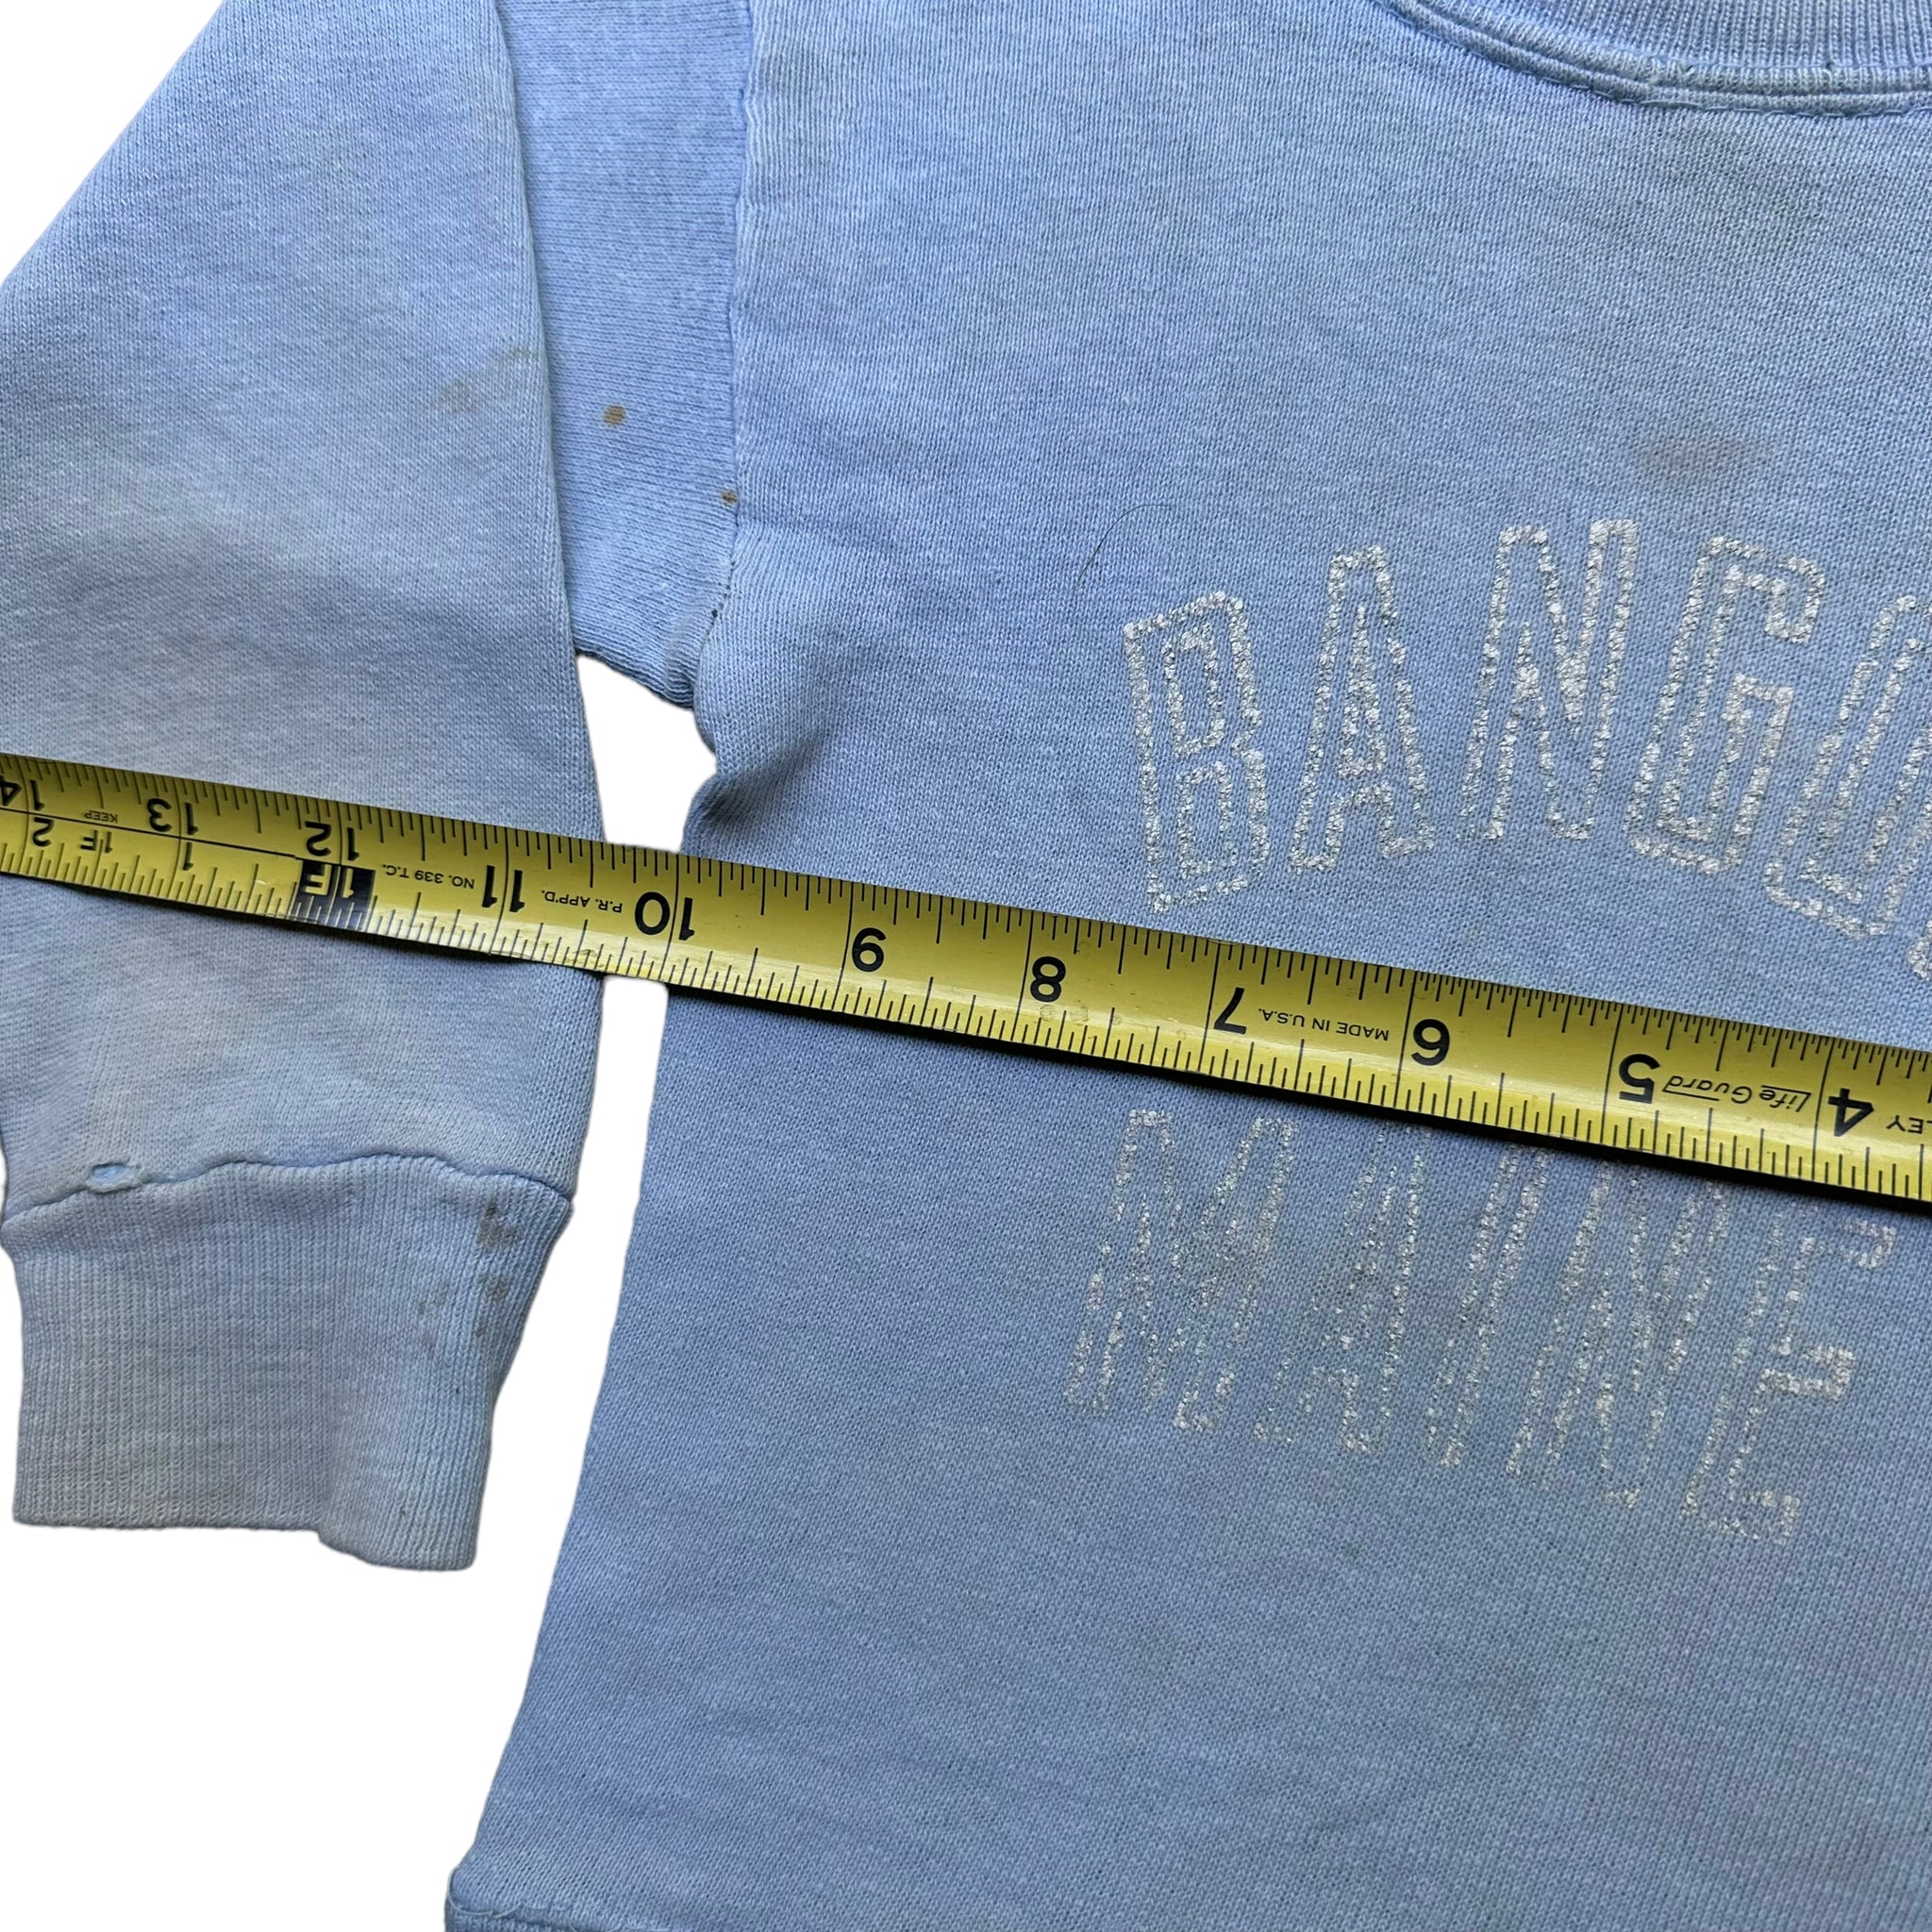 50s Bangor maine toddler sweatshirt